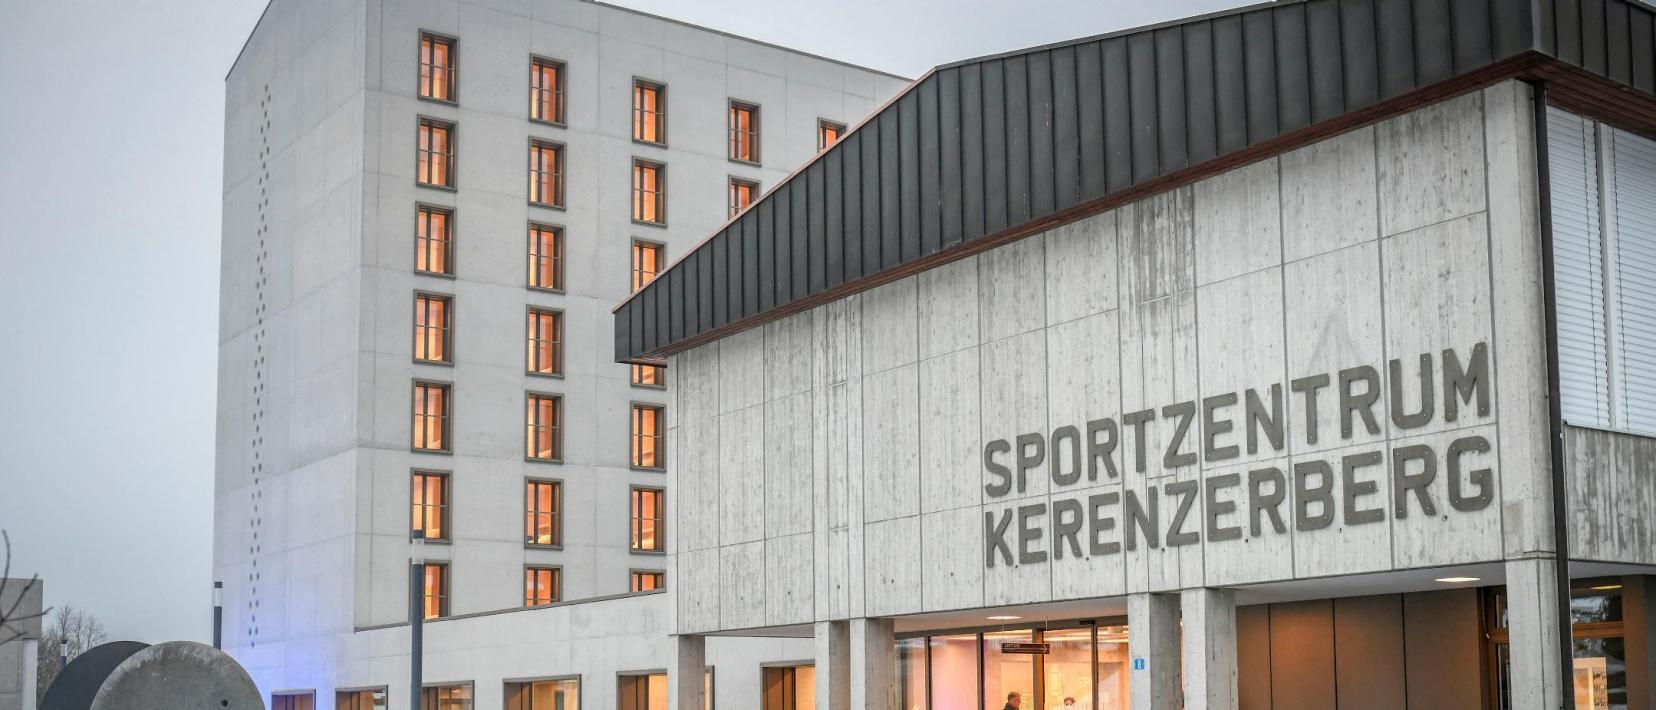 Leichtathletikanlage Sportzentrum Kerenzerberg